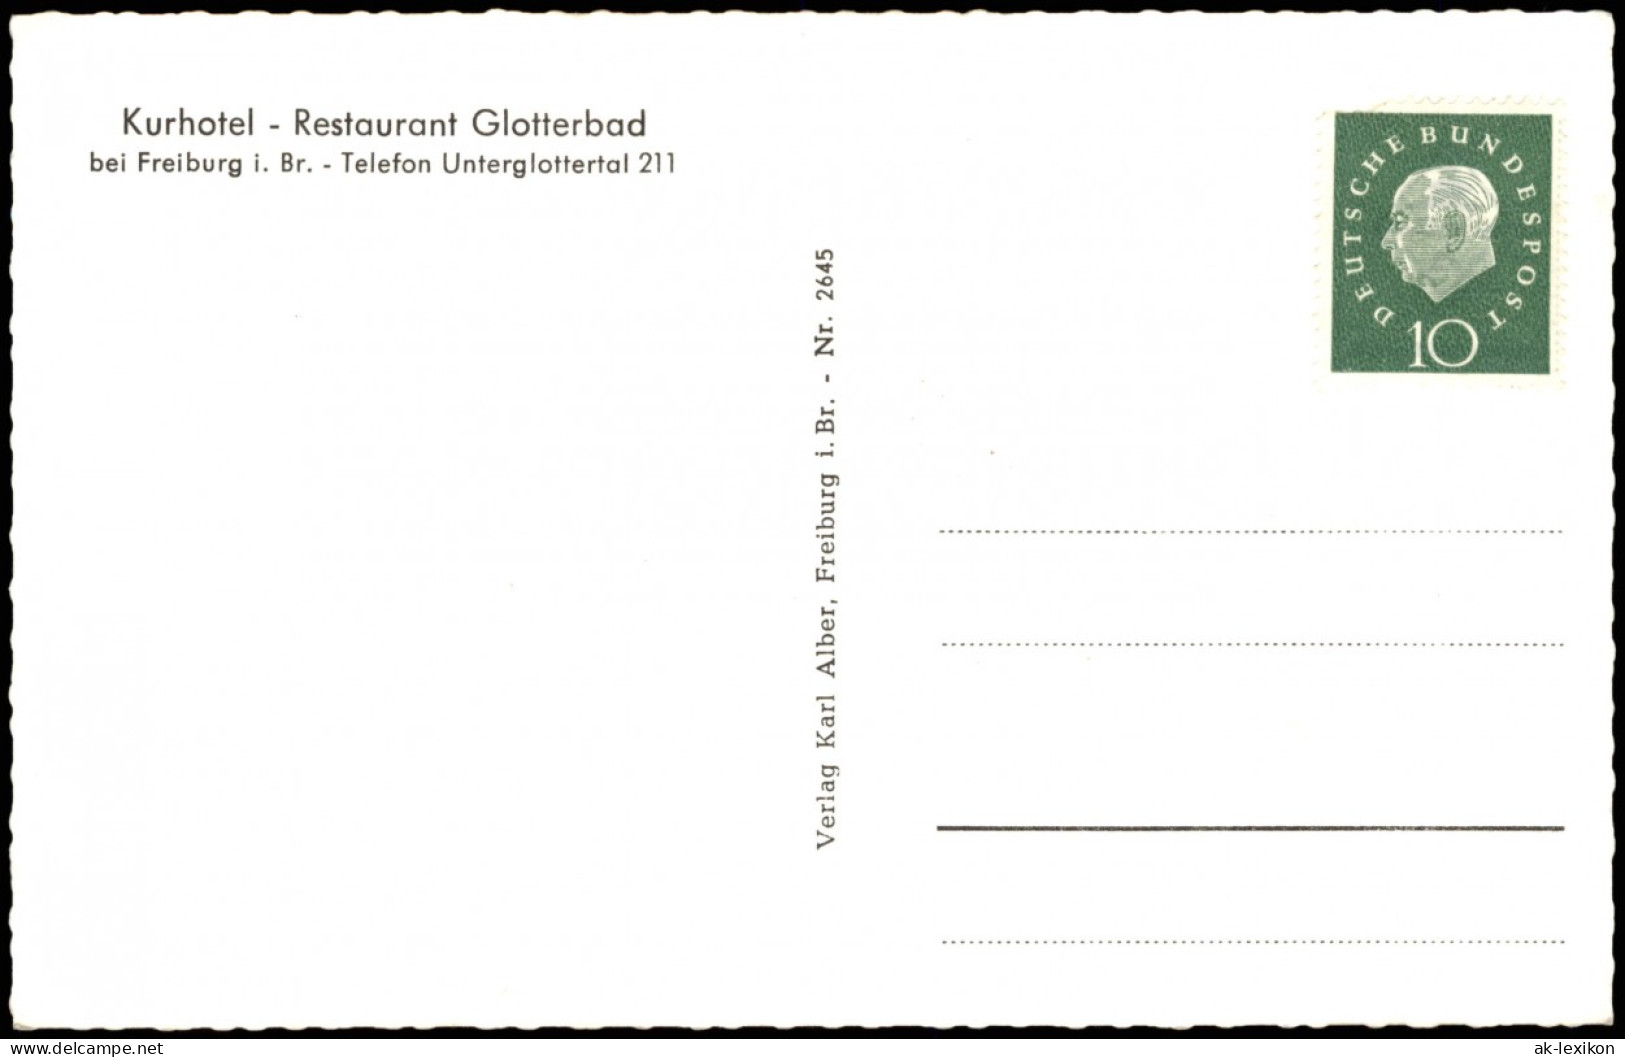 Glotterbad-Glottertal Kurhotel Restaurant Glotterbad Region Unterglottertal 1960 - Glottertal